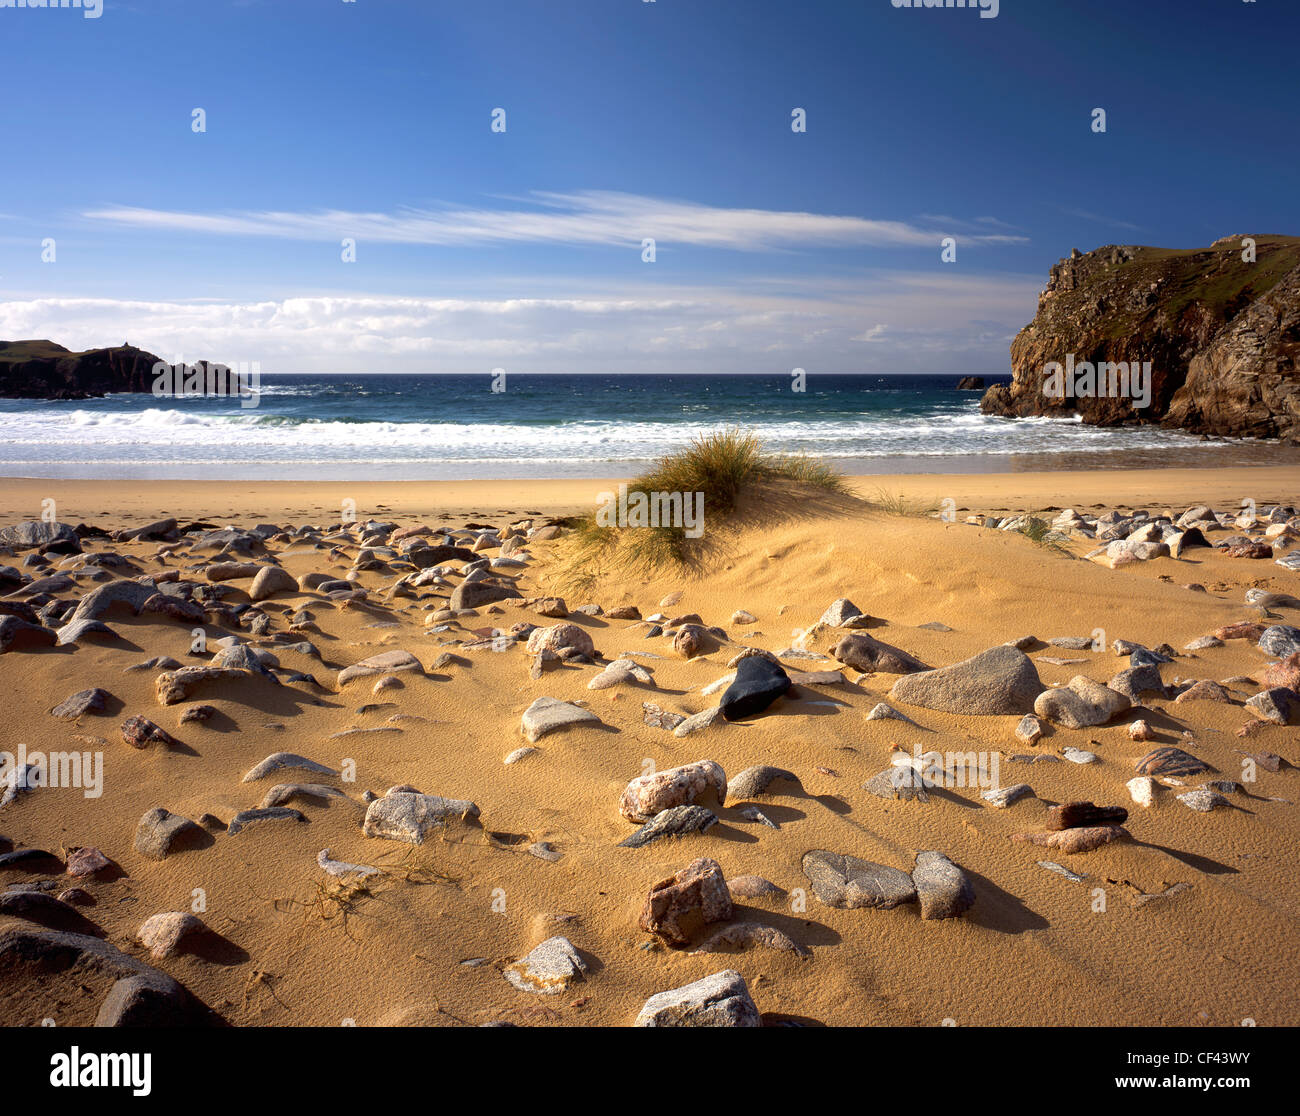 La vista dell'Oceano Atlantico da una roccia a distanza coperta spiaggia di sabbia sulla costa occidentale dell'isola di Lewis. Foto Stock